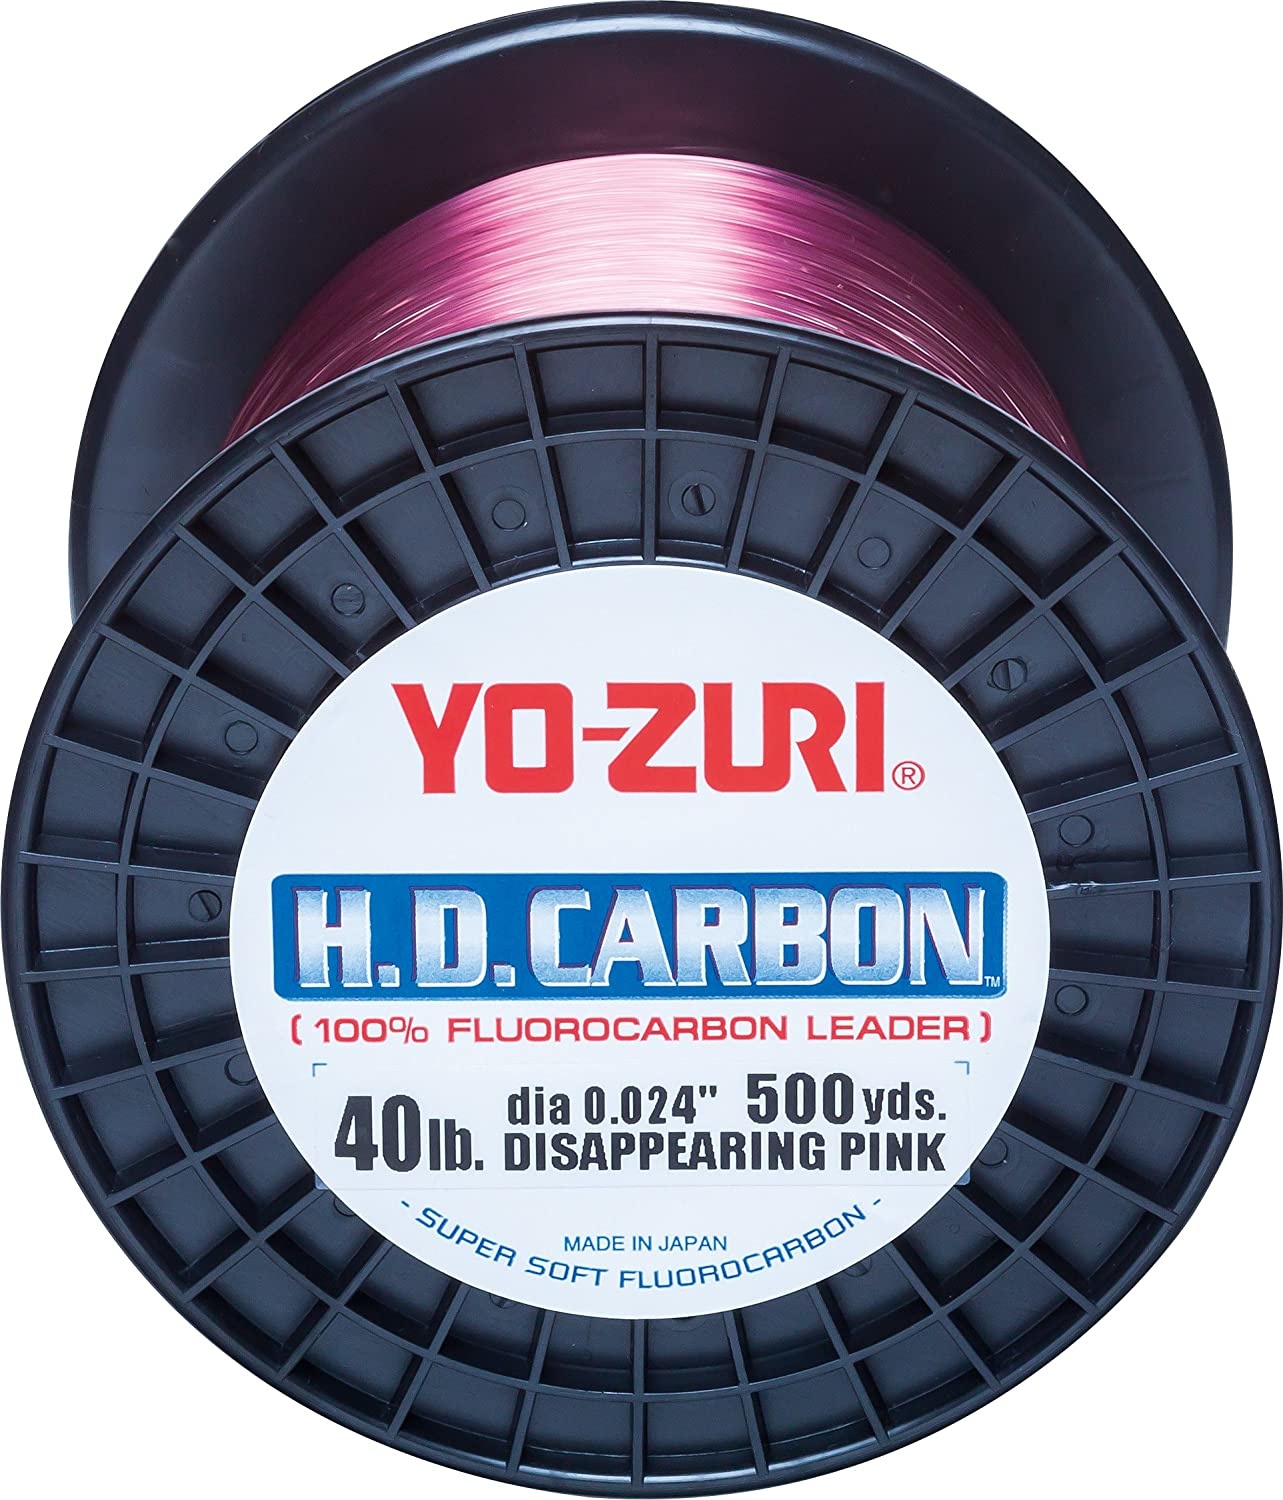 Yo-Zuri HD Fluorocarbon Leader Pink 30yds 200-Pound